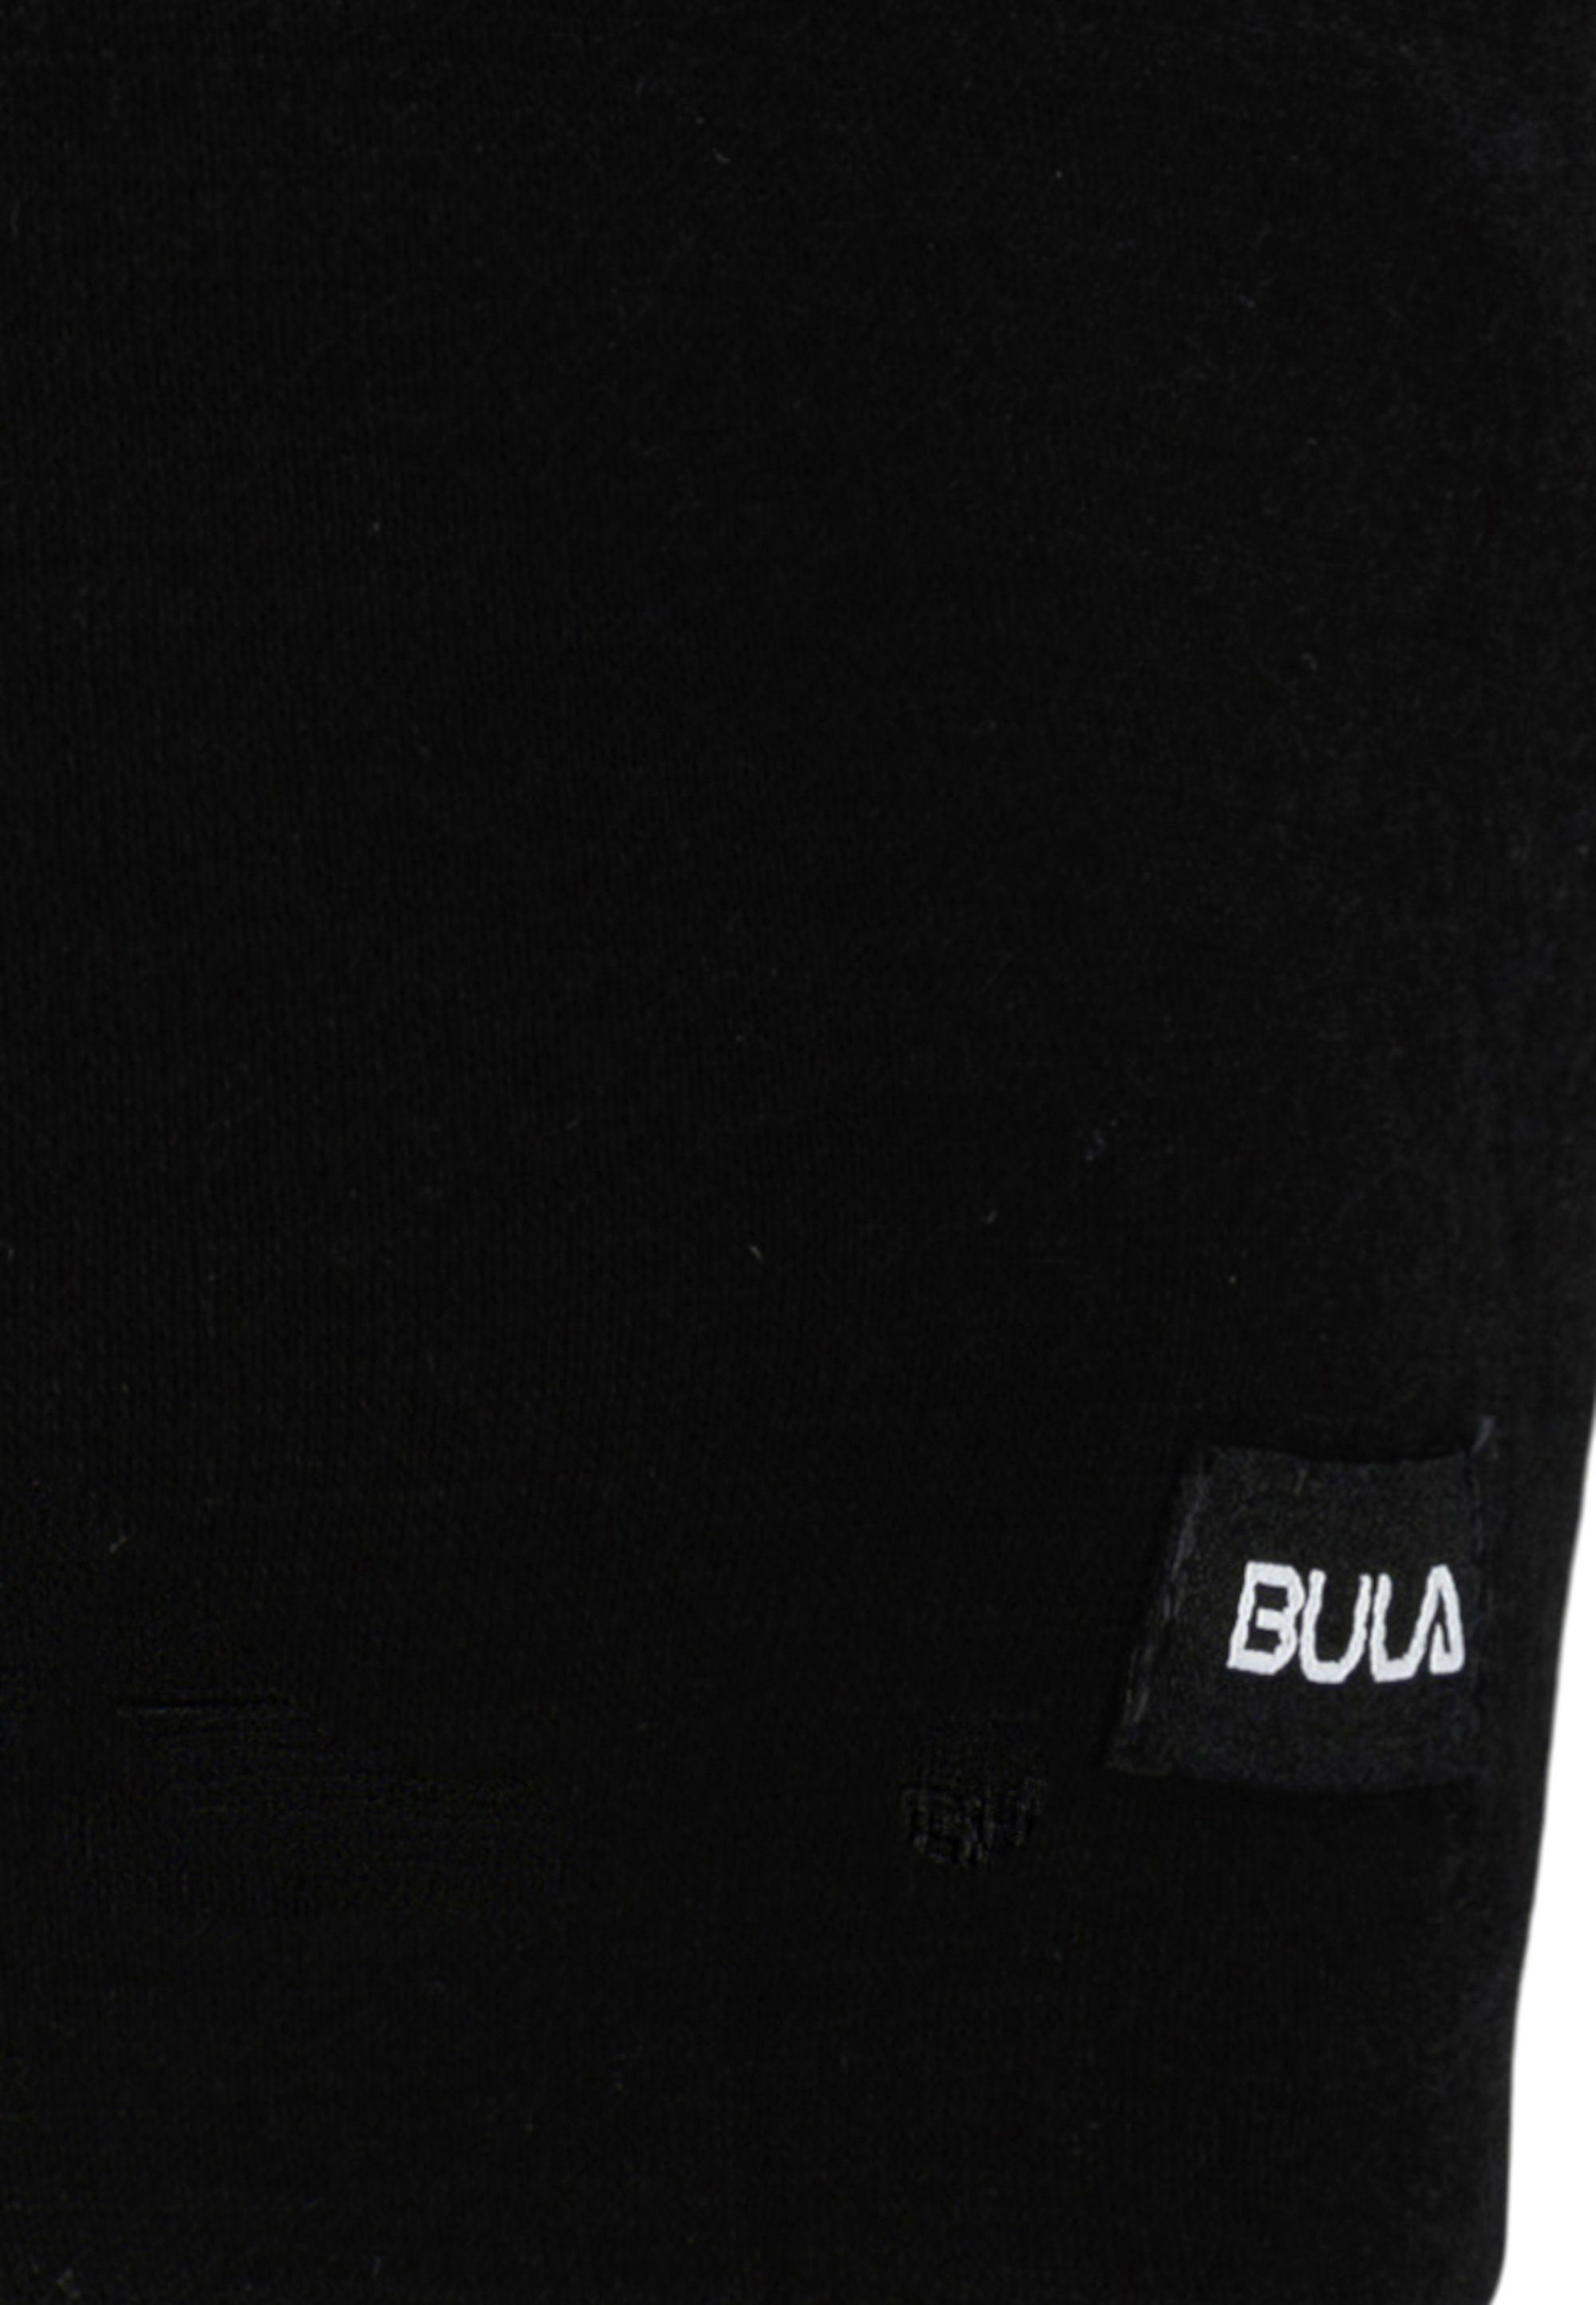 BULA Beanie im schwarz Design sportlichen